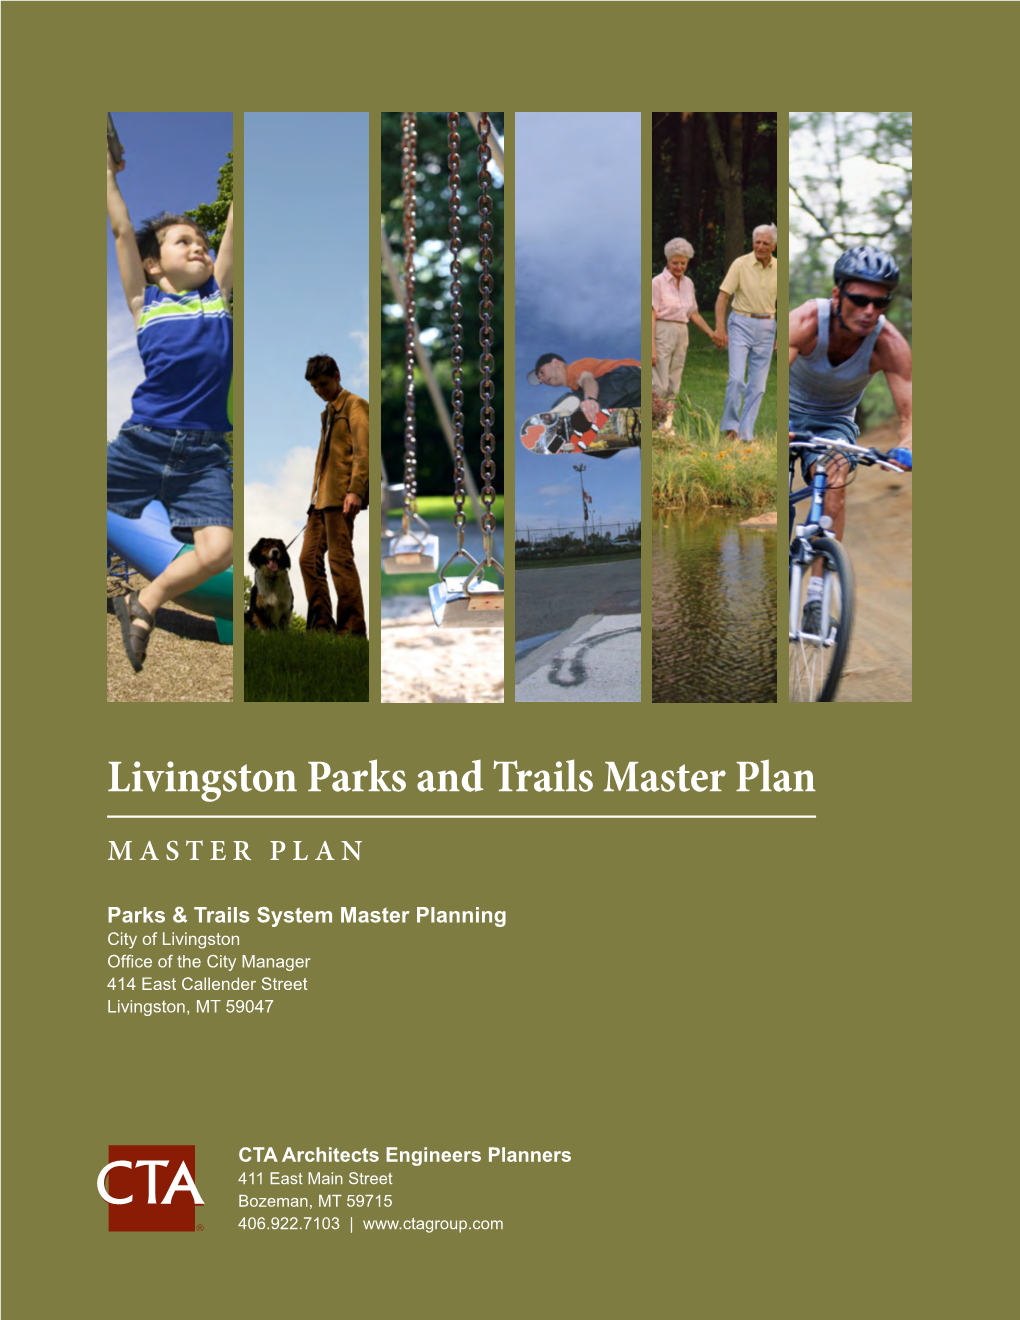 Parks & Trails Master Plan